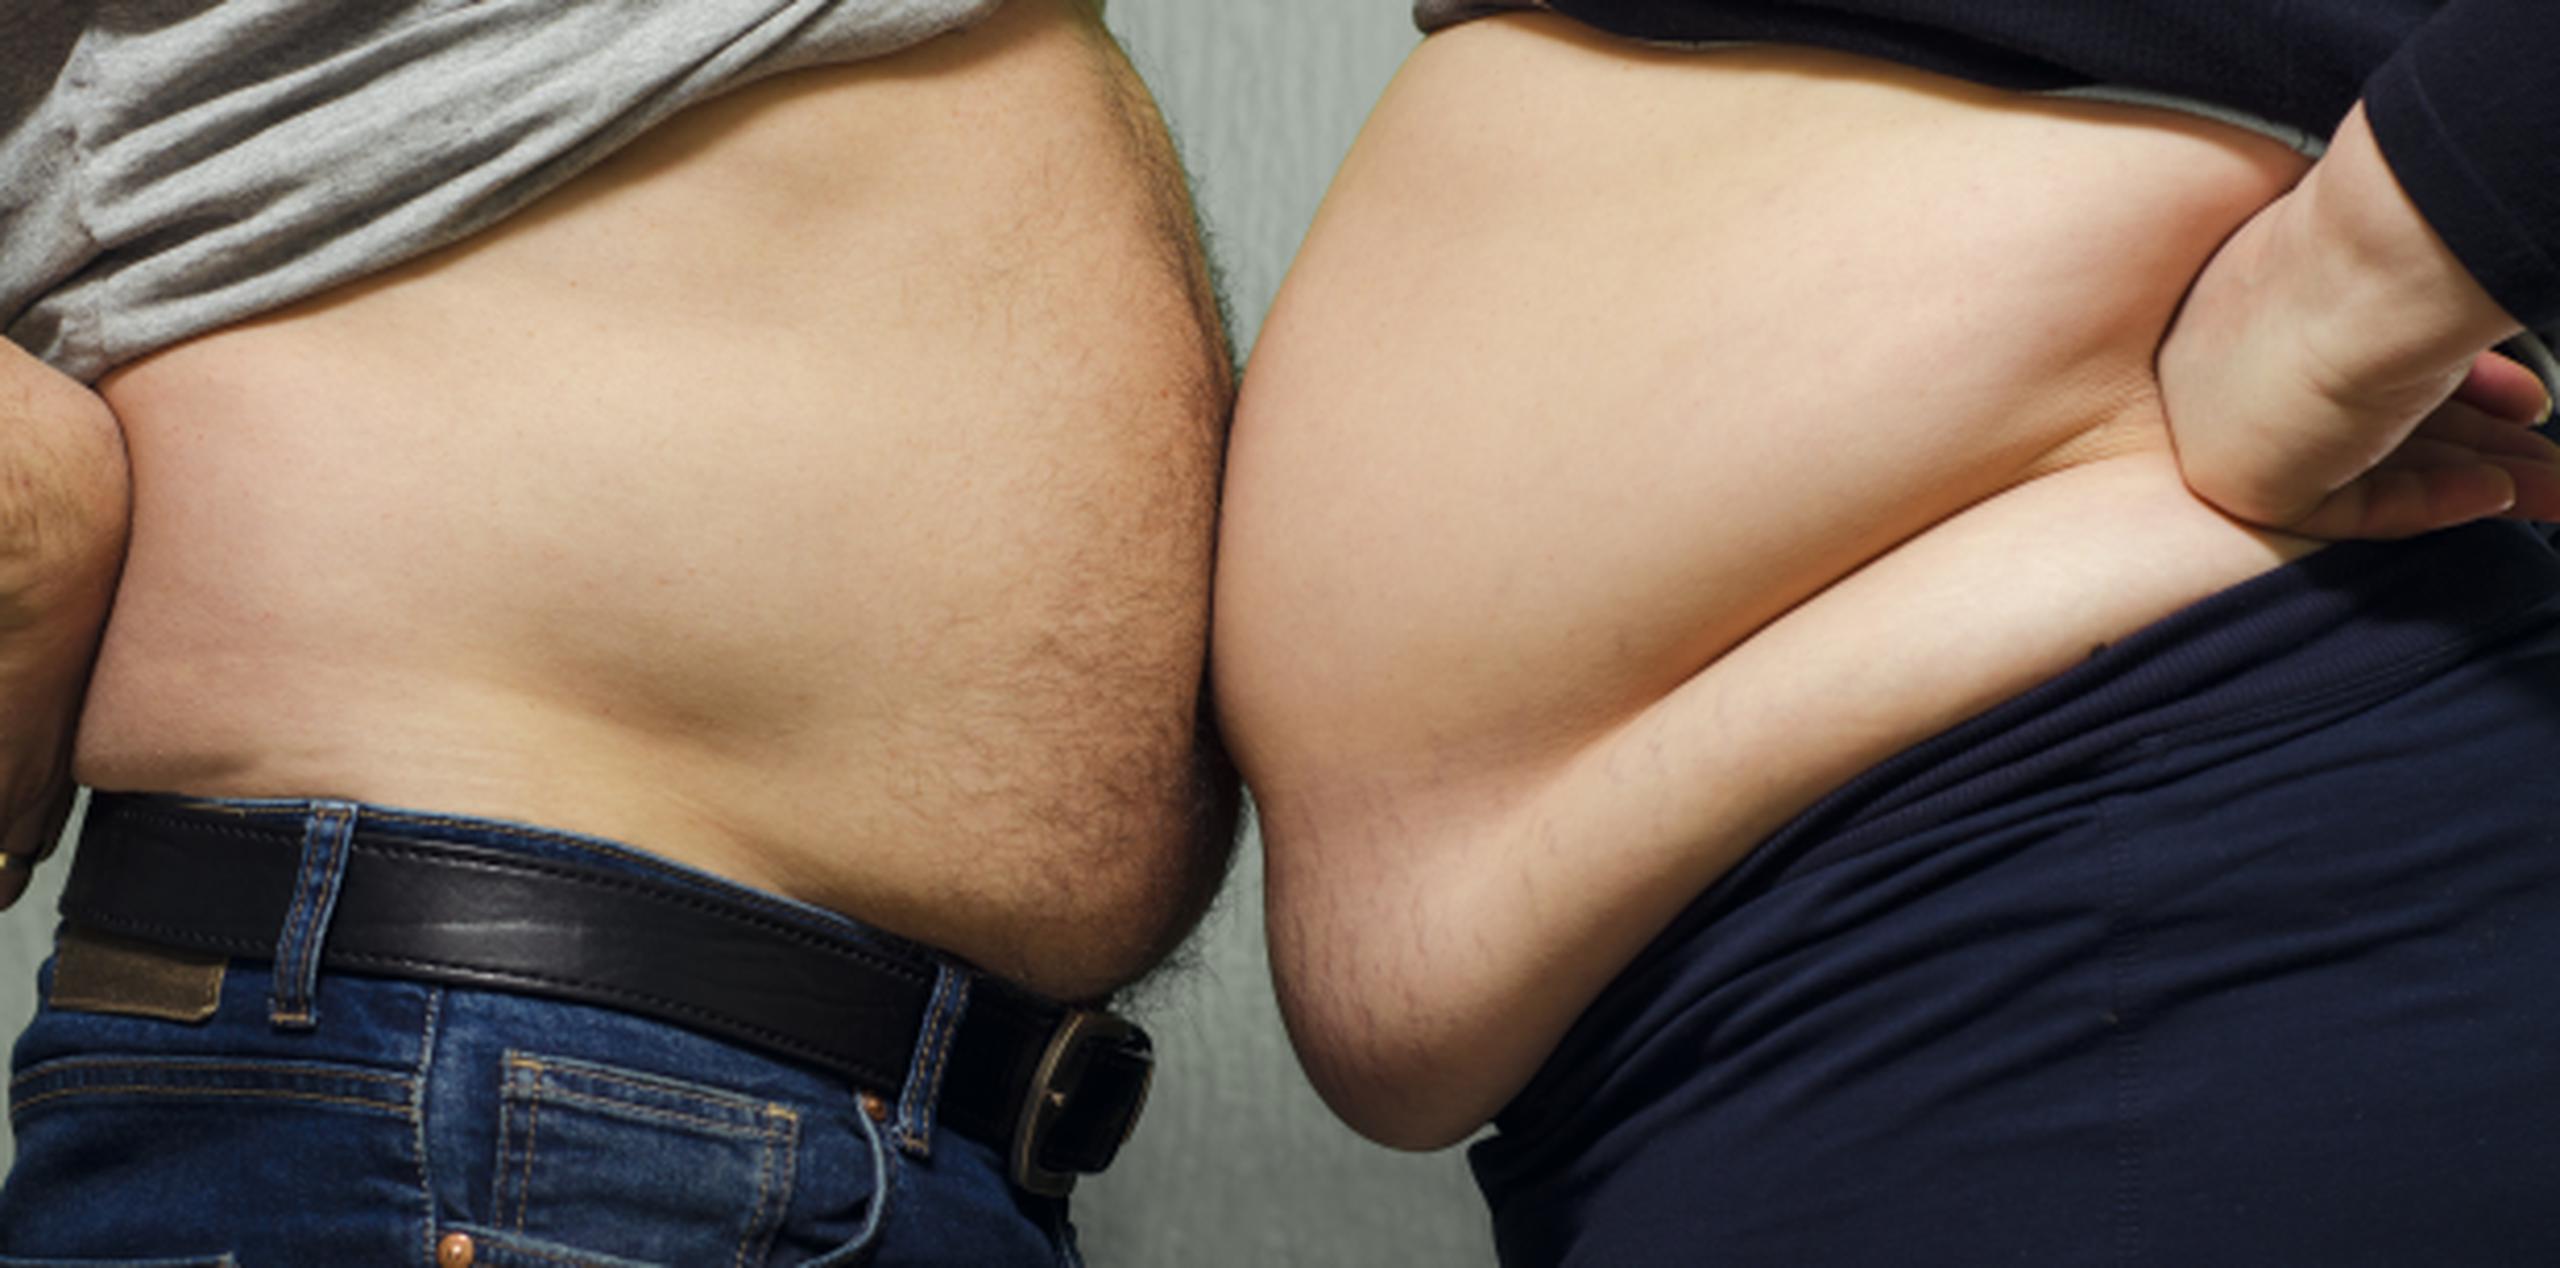 Al menos 2,000 millones de los 7,000 millones de habitantes del mundo tienen sobrepeso o son obesos. (Shutterstock)